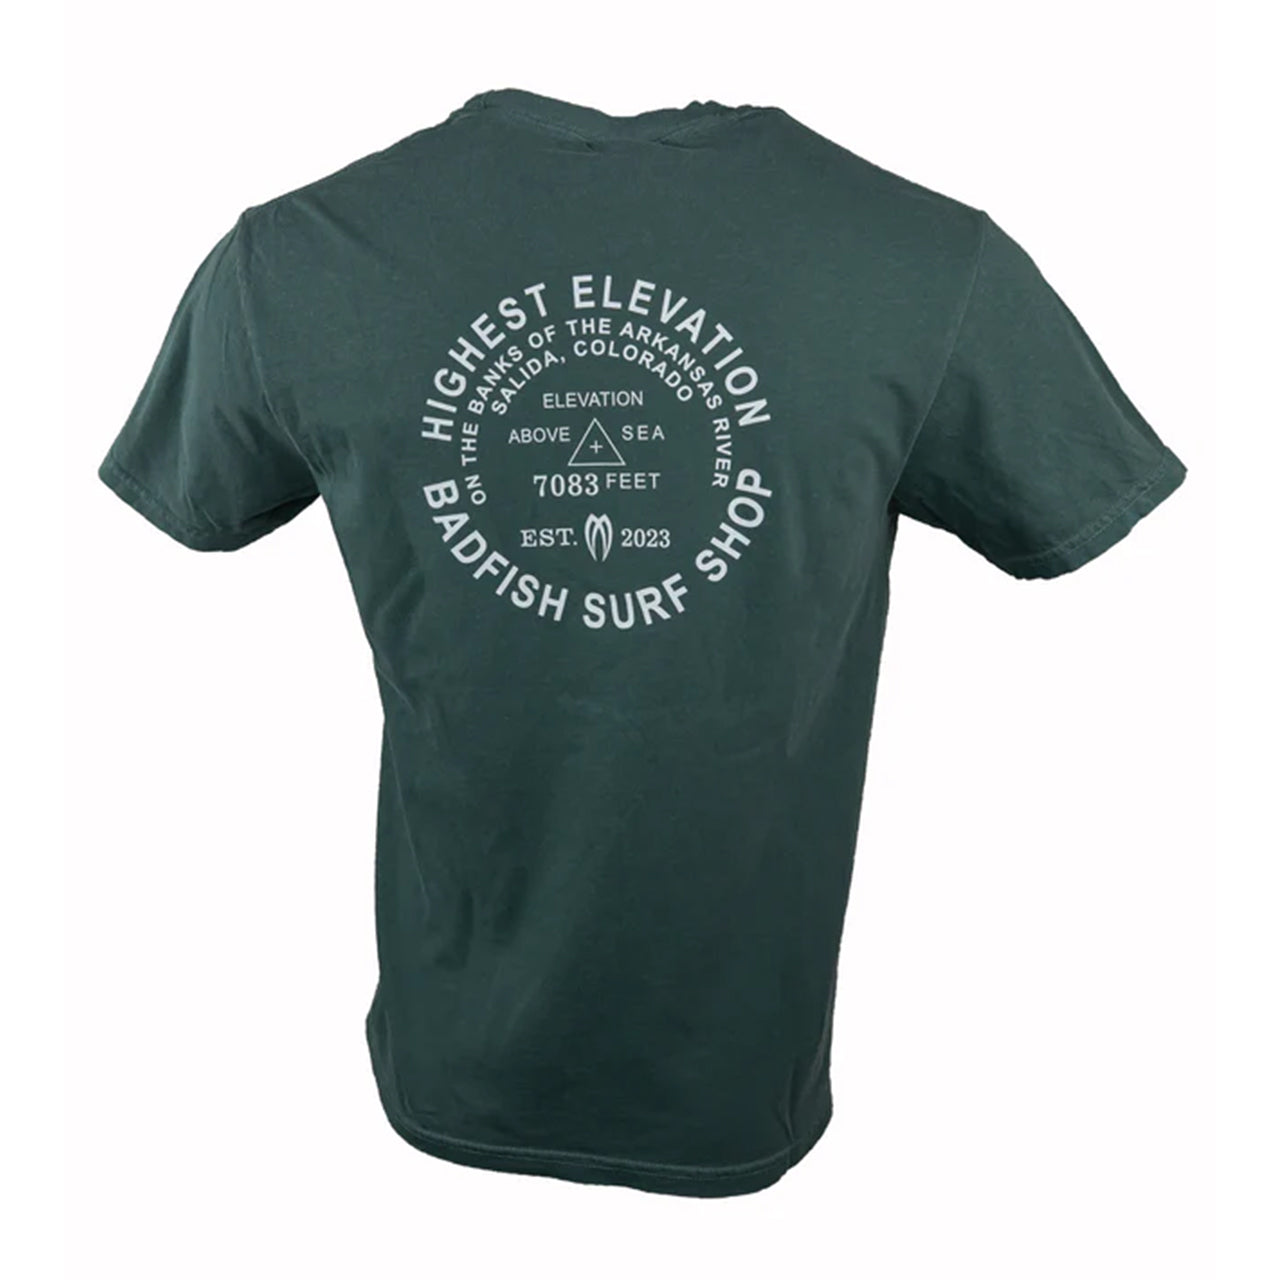 Highest Elevation Surf Shop T-Shirt